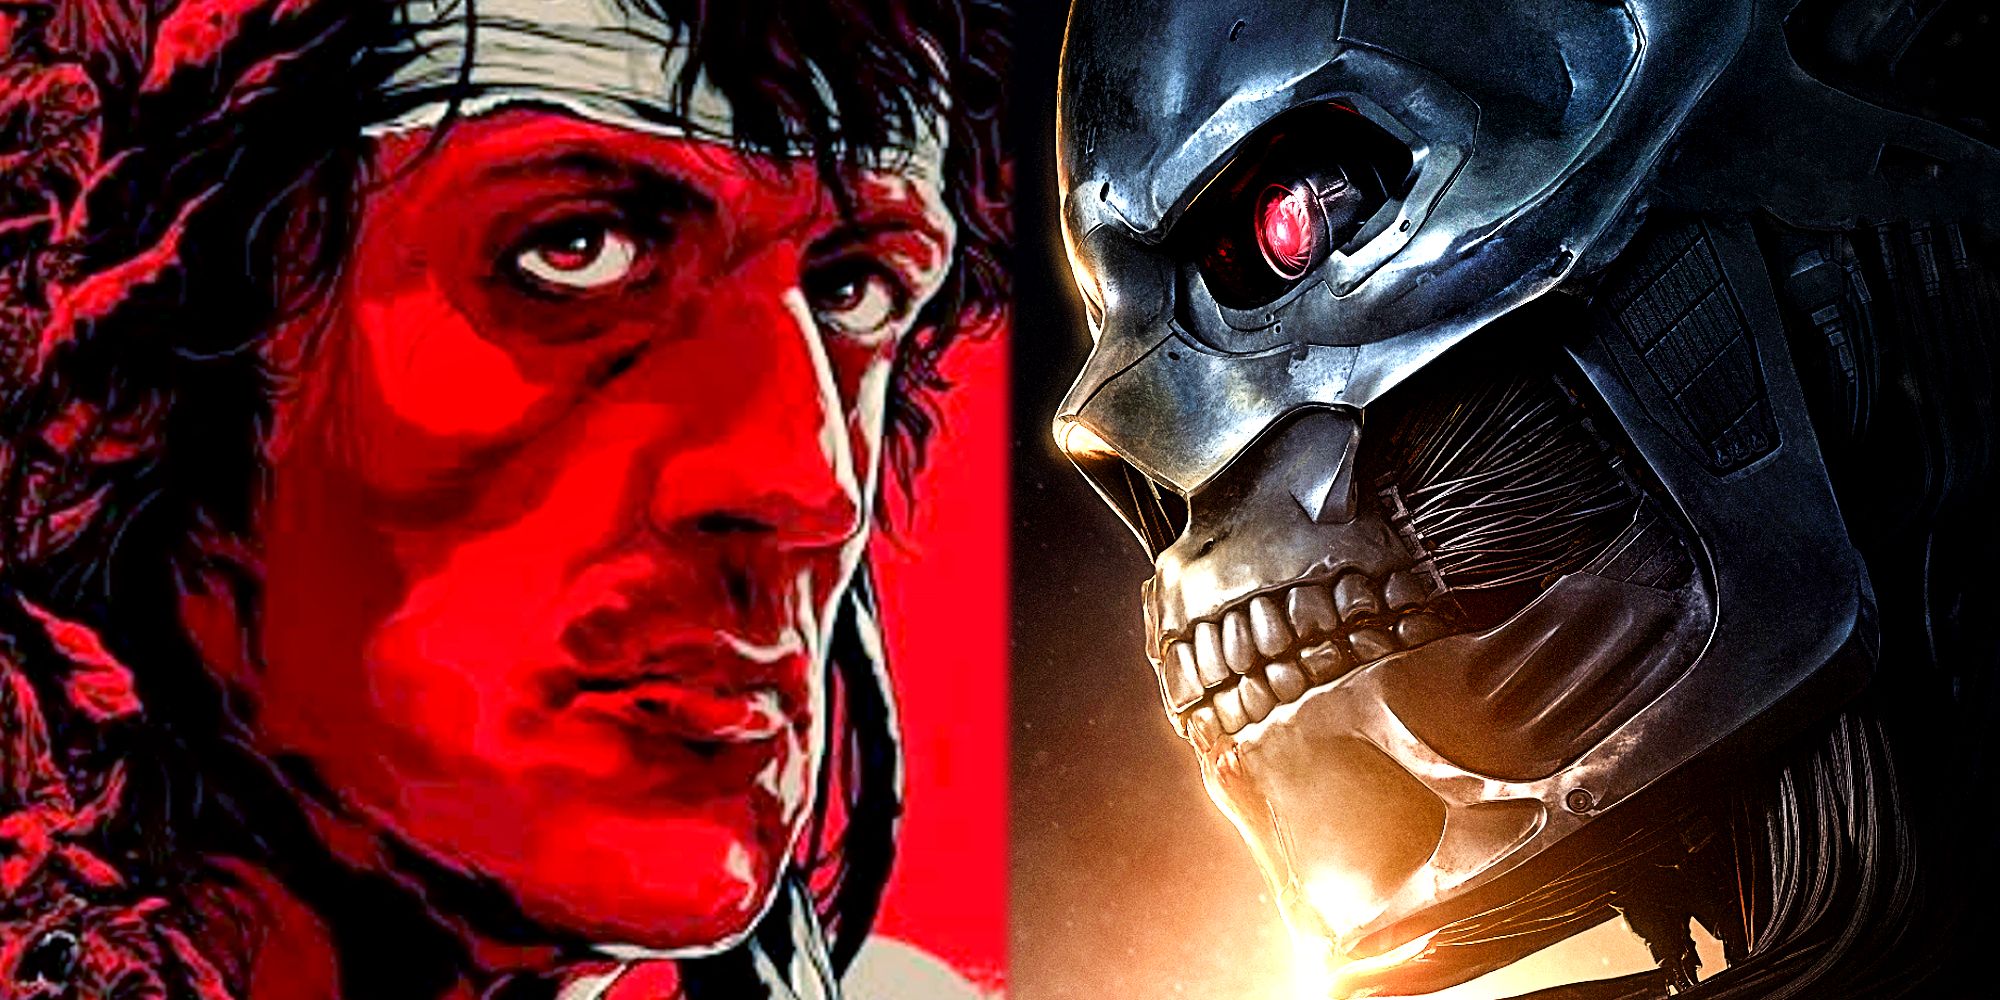 Las secuelas de Rambo y Terminator cometieron exactamente el mismo error de género